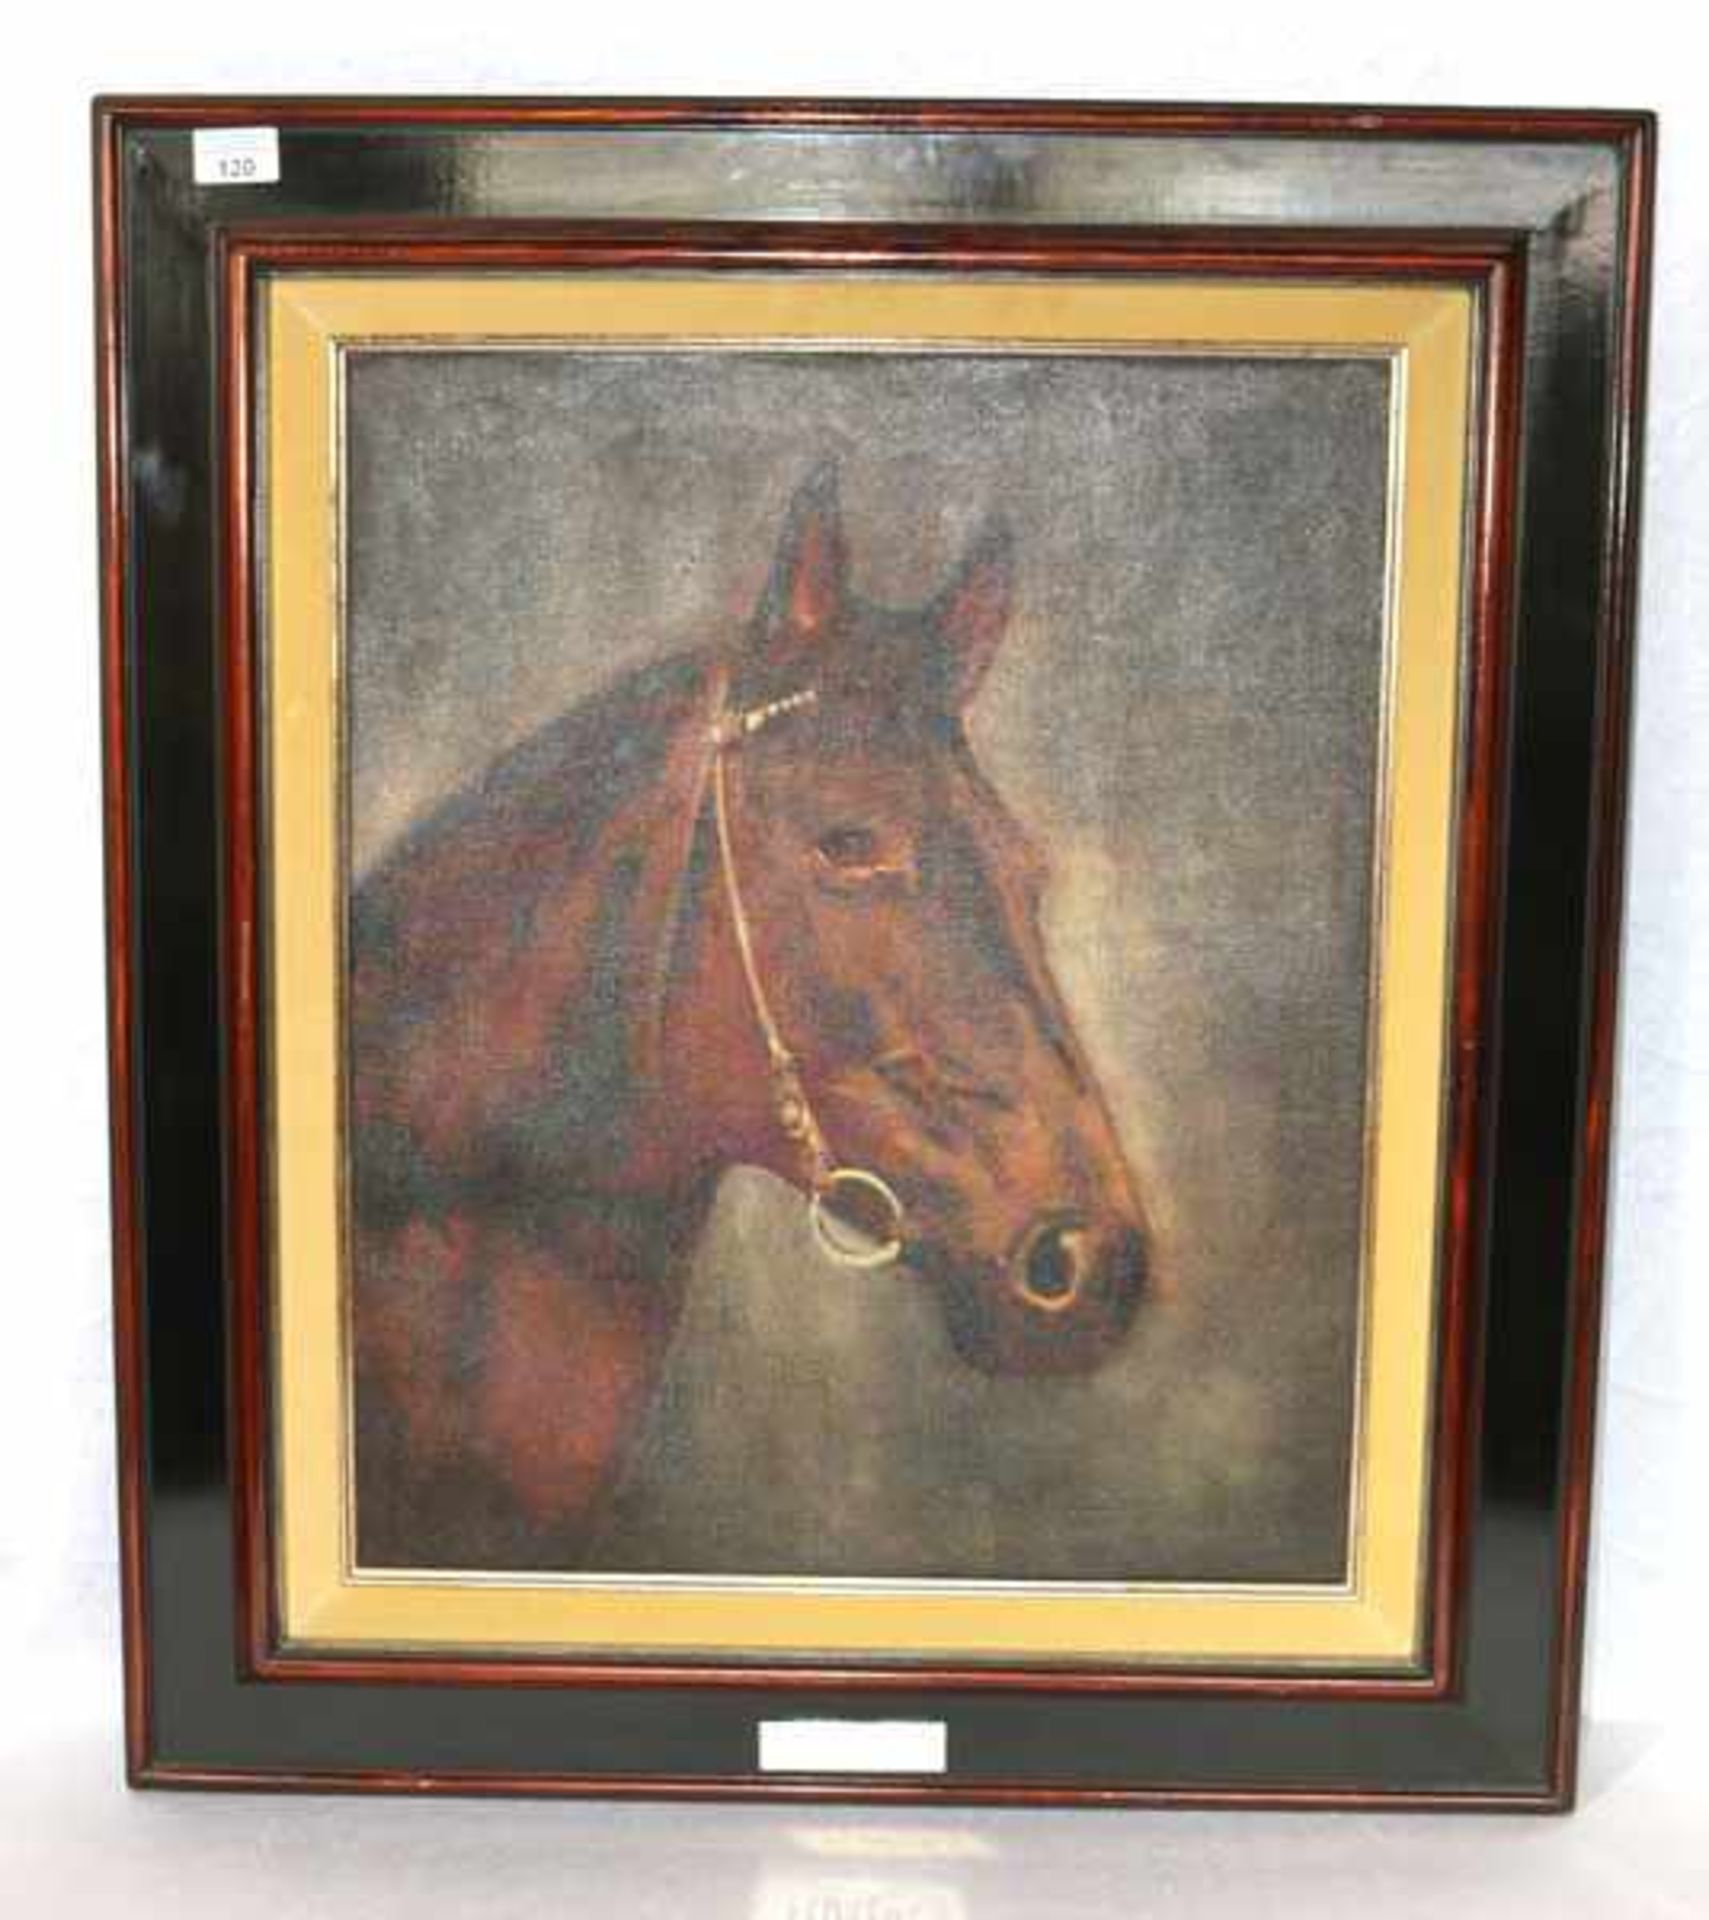 Gemälde ÖL/LW 'Pferdekopf', gerahmt, Rahmen bestossen, incl. Rahmen 82 cm x 71 cm